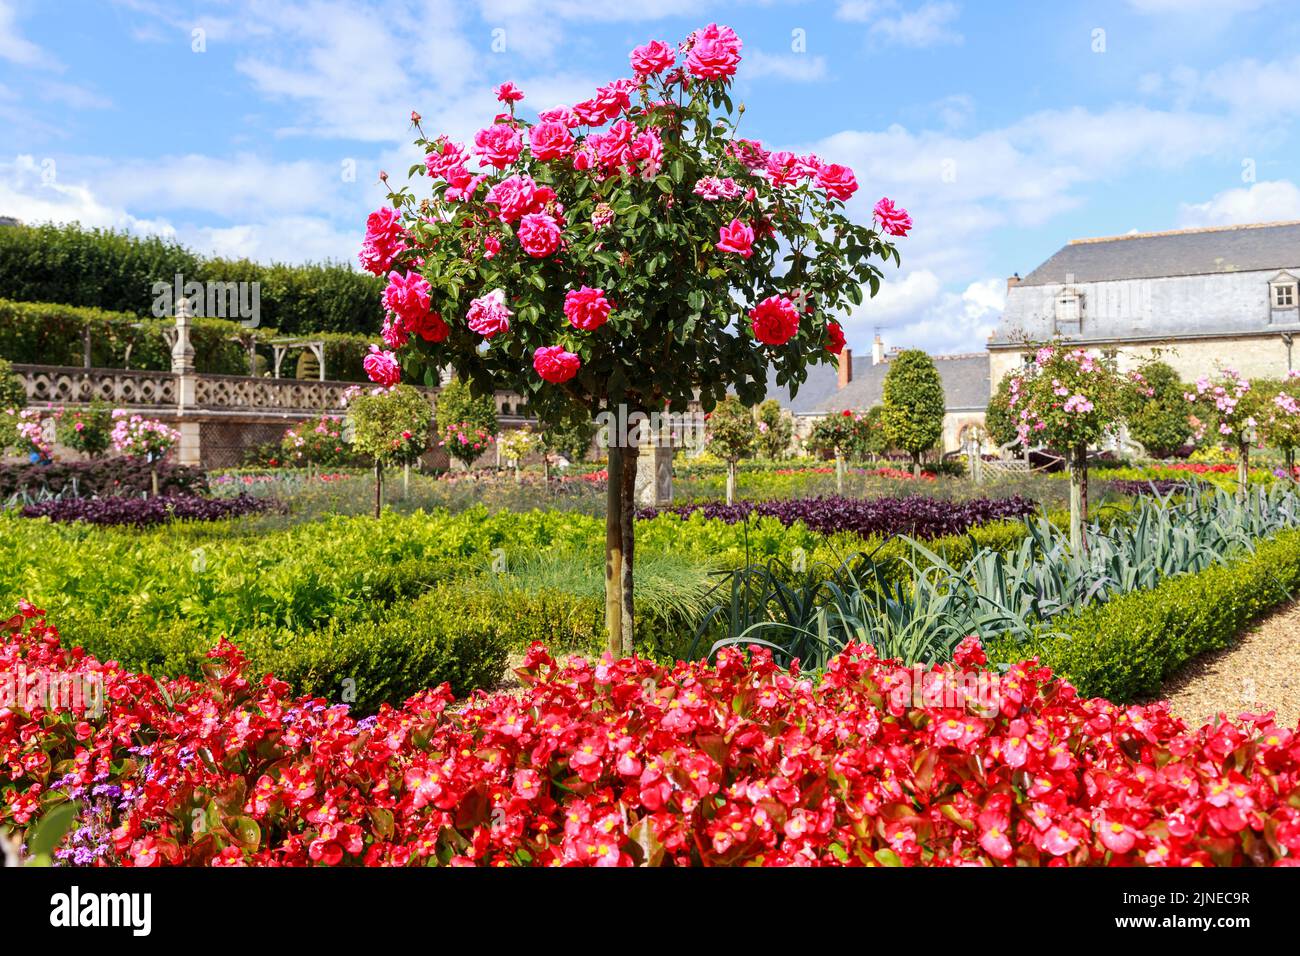 VILLANDRY, FRANCIA - 7 DE SEPTIEMBRE de 2019: Este es uno de los arbustos de rosas en forma de árbol que adornan los famosos jardines del Castillo de VI Foto de stock